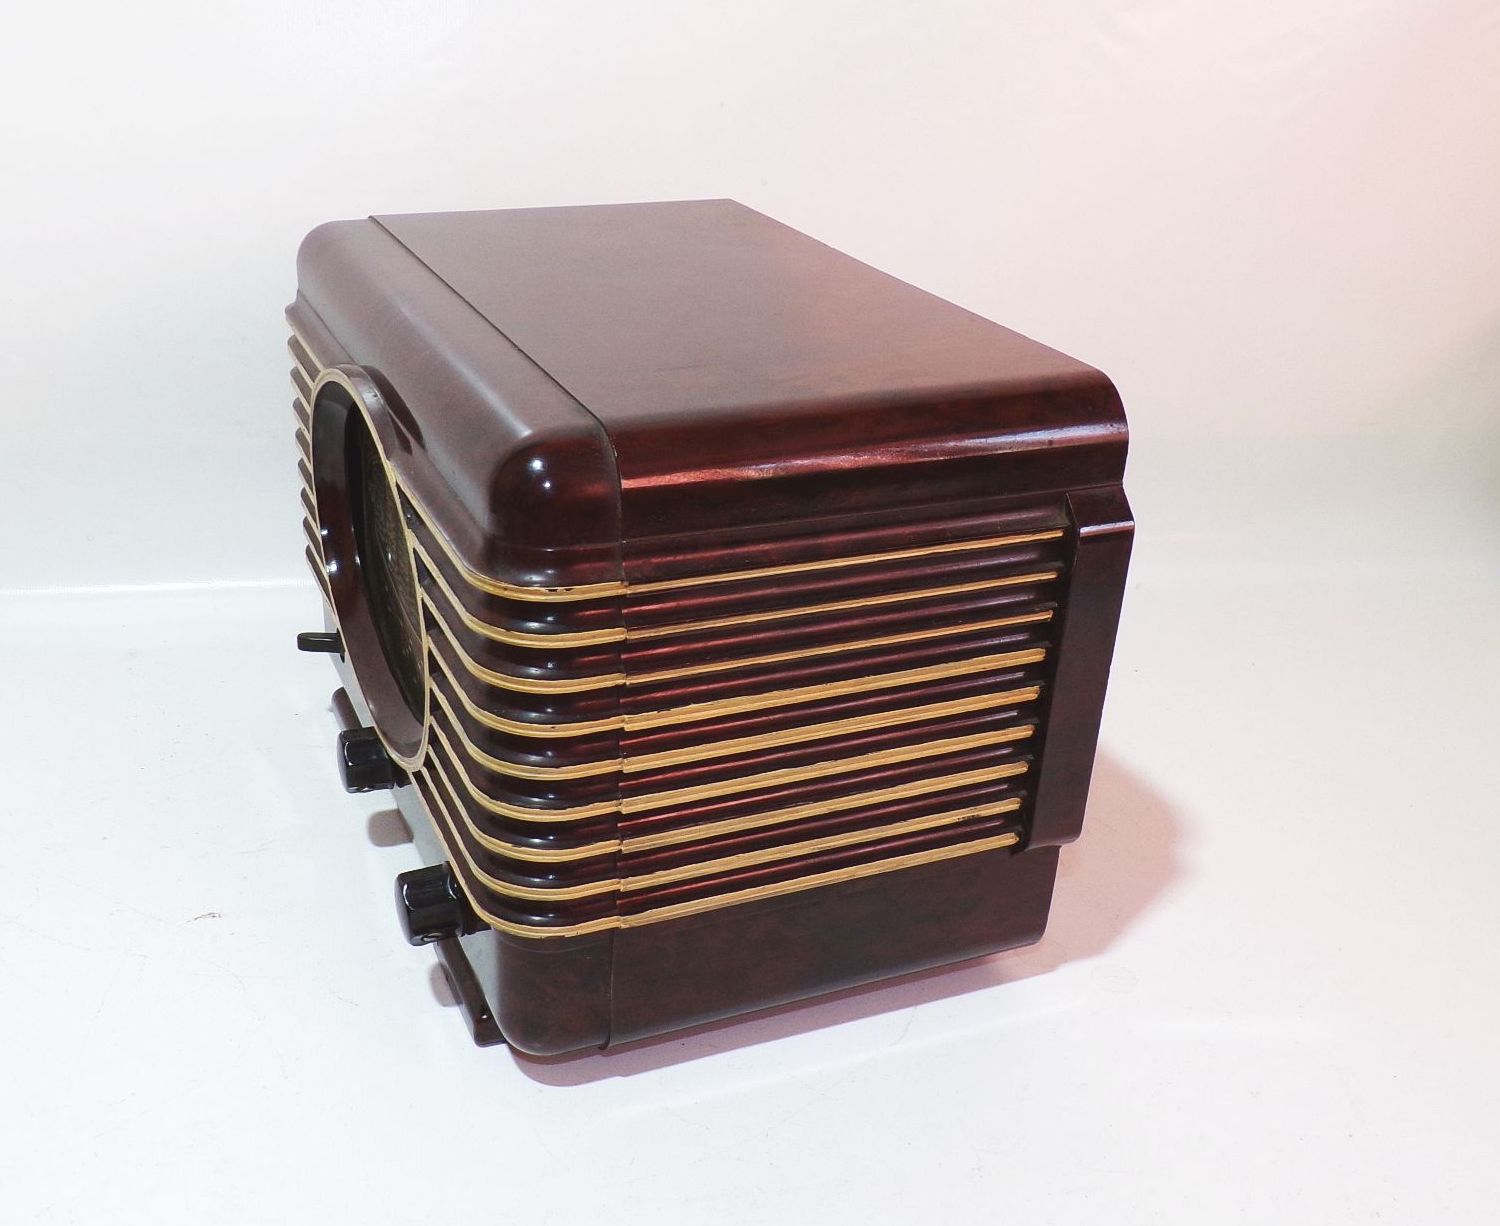 Radialva Röhrenradio Bakelit Radio Frankreich um 1940 vintage deko